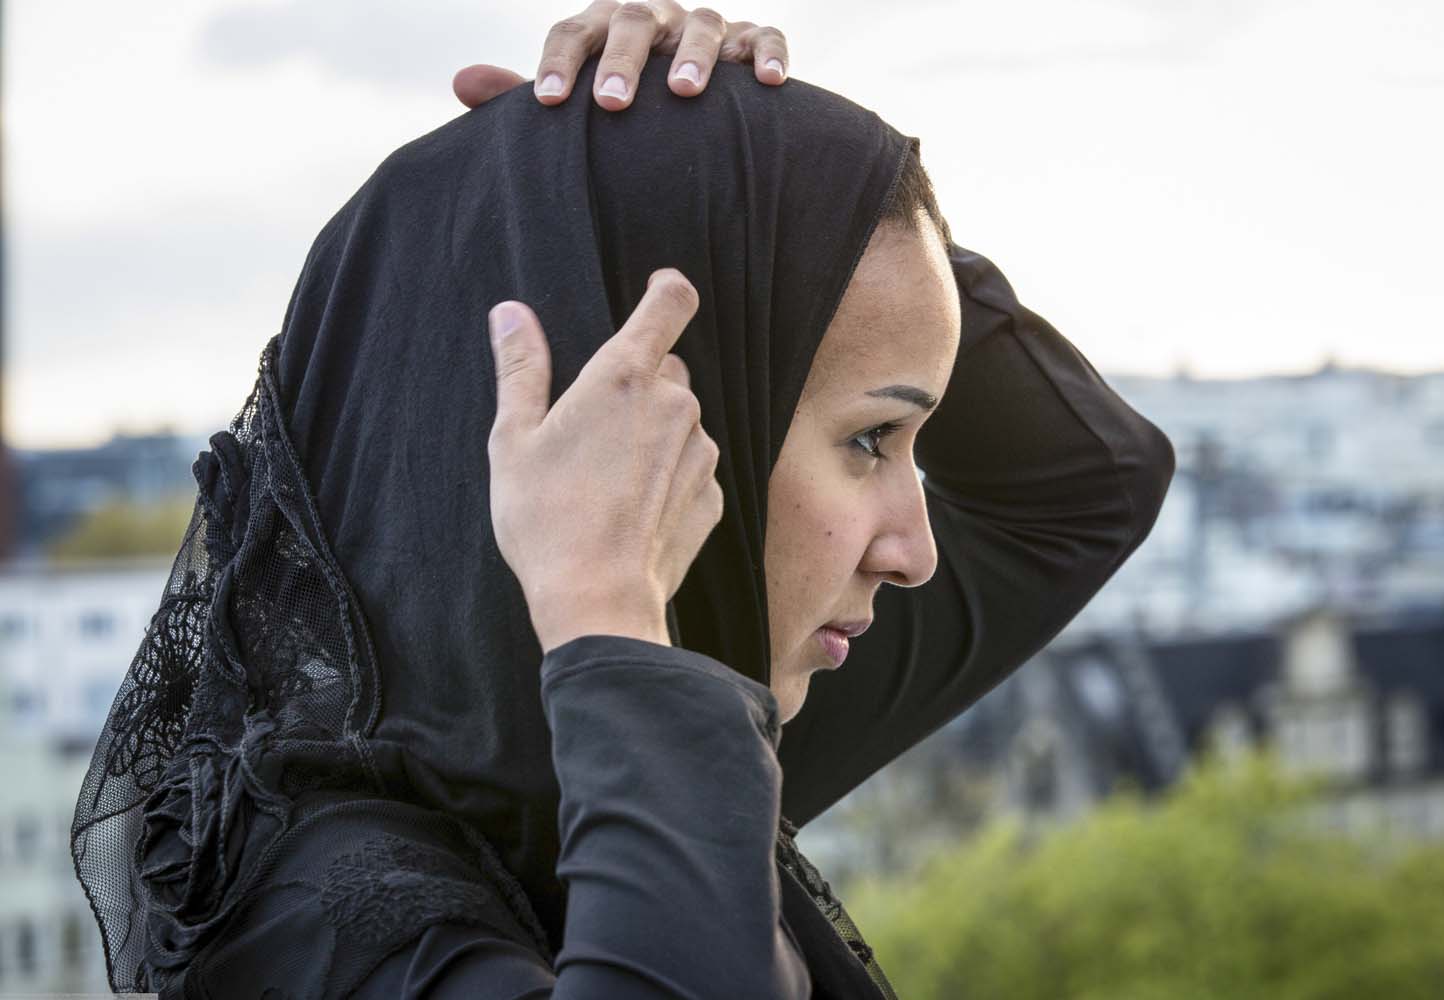 Manal al-Sharif, Oslo, Norway, 2012. (Oslo Freedom Forum)